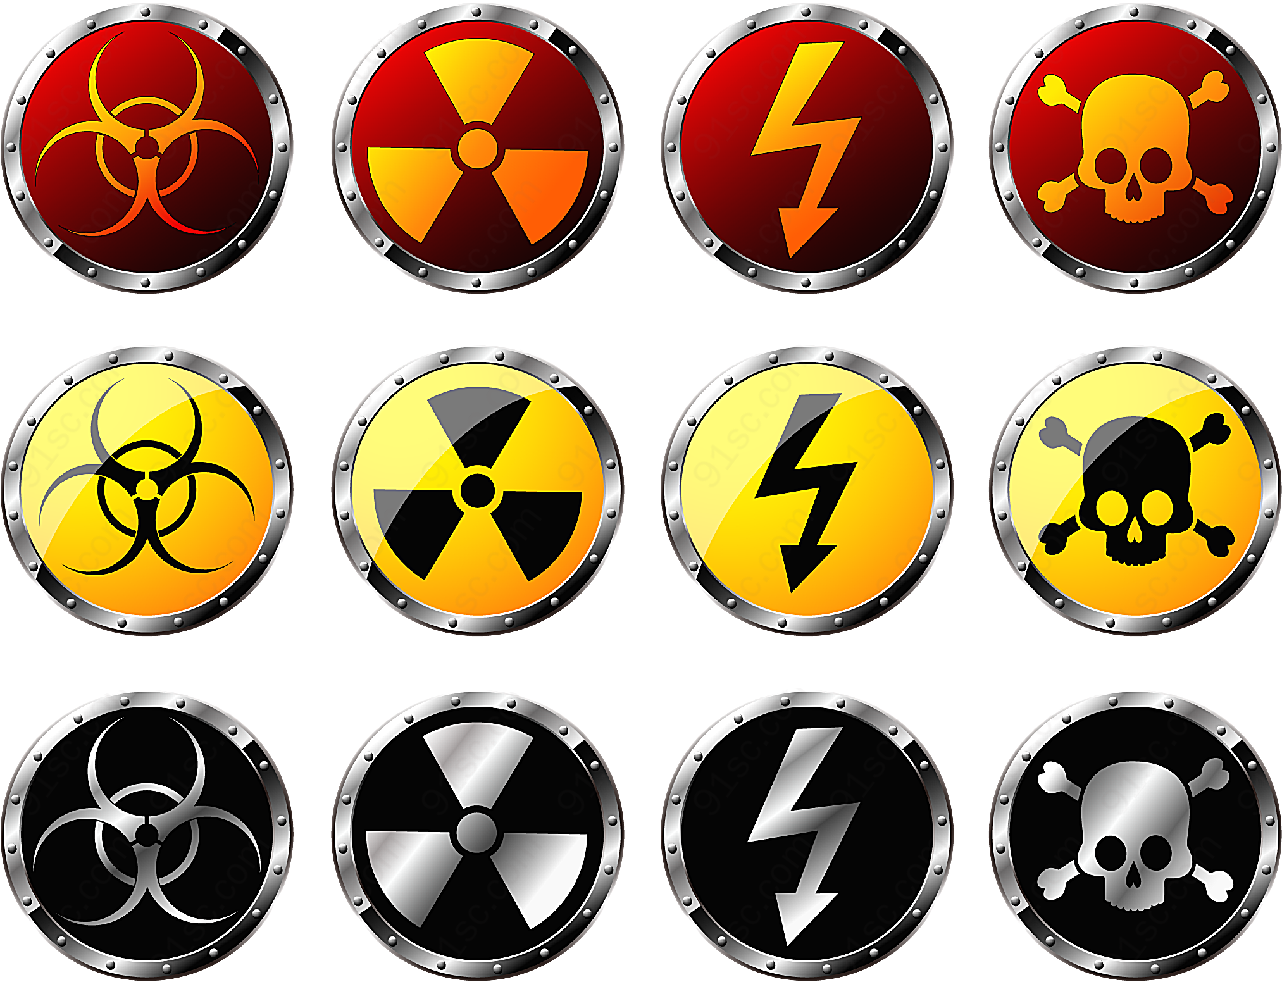 核辐射警告标志矢量各类标识